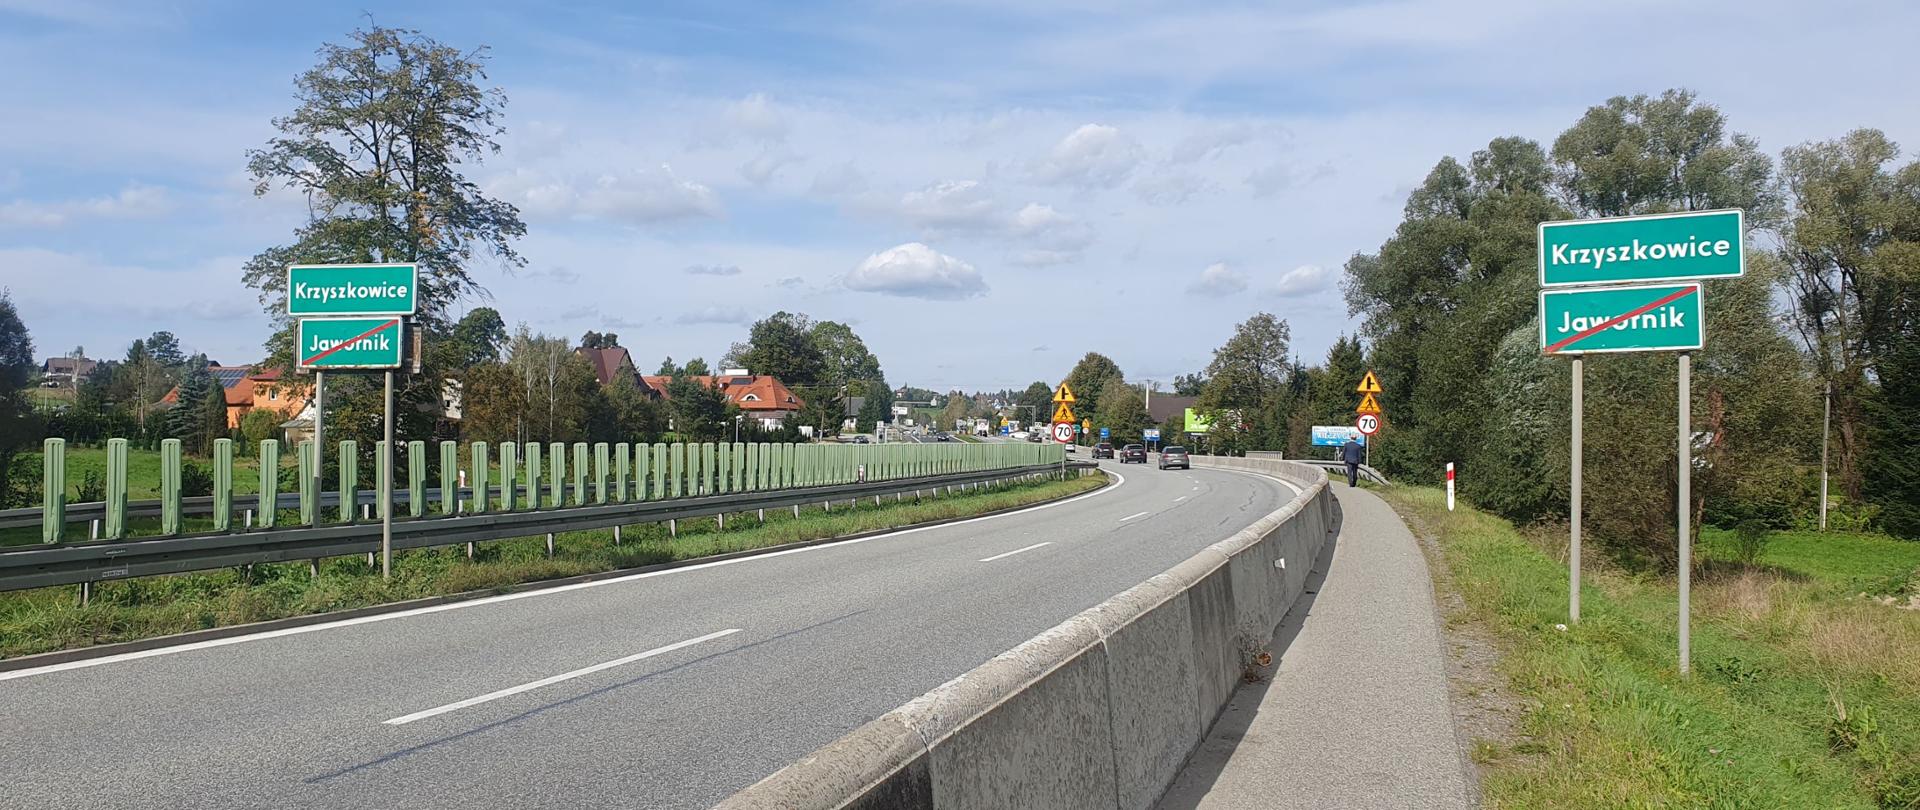 DK7 w Krzyszkowicach, pobocze oddzielone betonowymi płytami od pasów ruchu, między jezdniami bariery przeciwolśnieniowe, w oddali zabudowania miejscowości